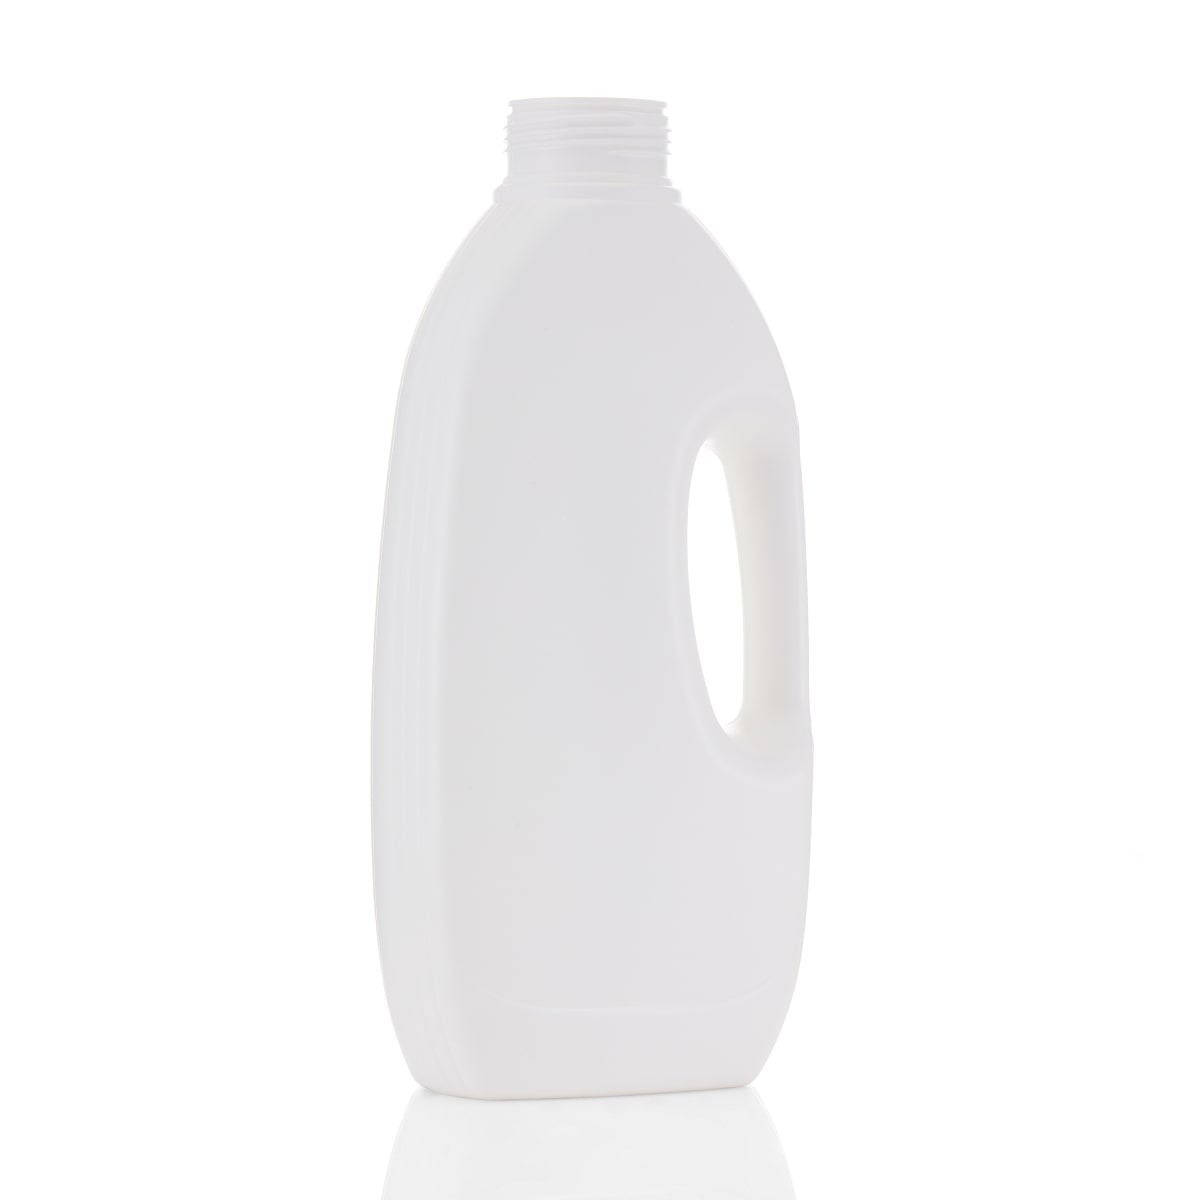 Laundry Detergent Bottle